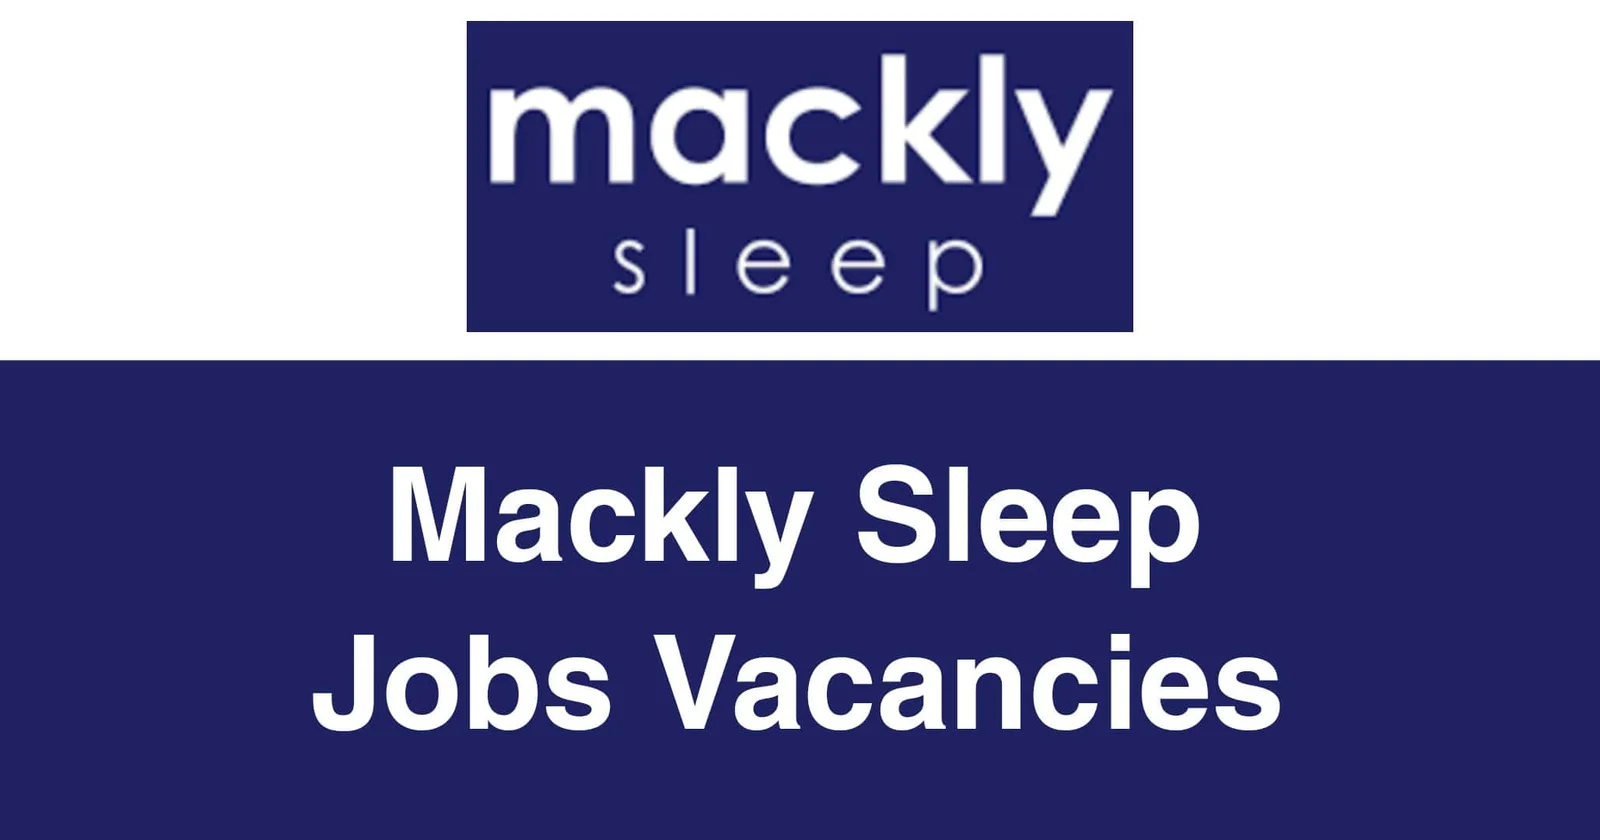 Mackly Sleep Jobs Vacancies